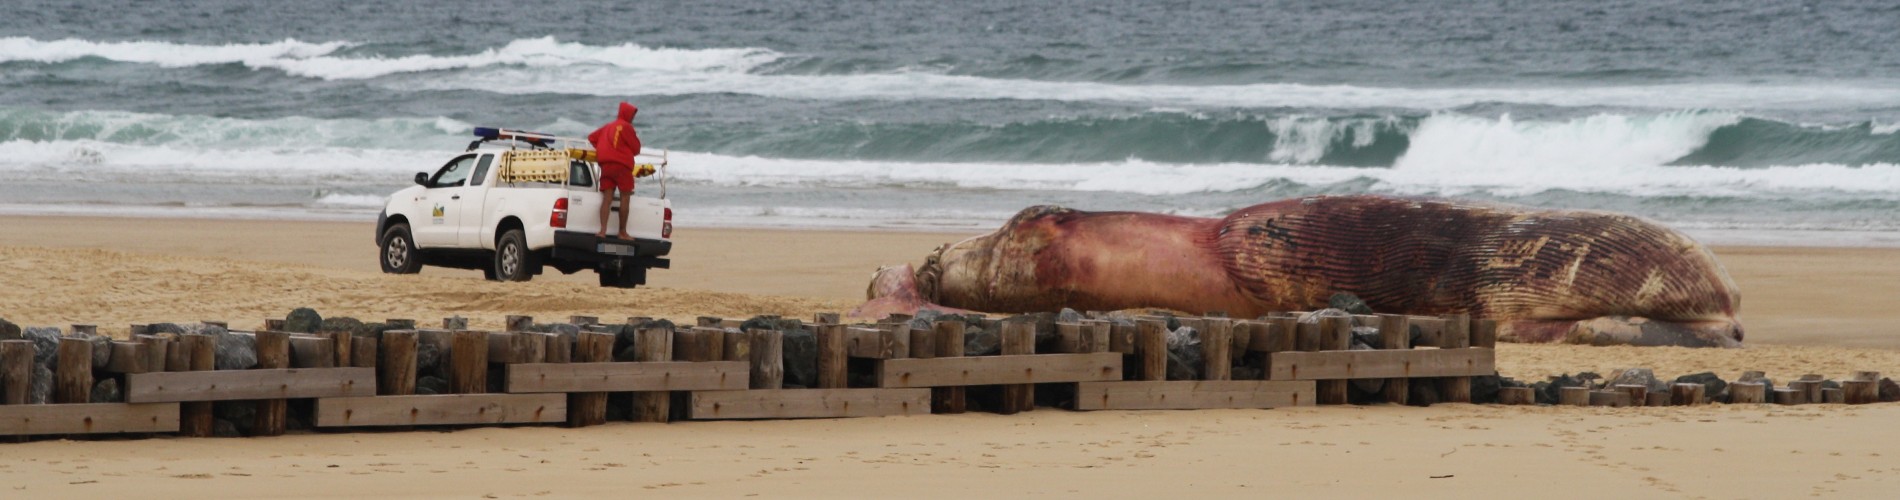 Échouage d'une baleine sur la plage de Contis